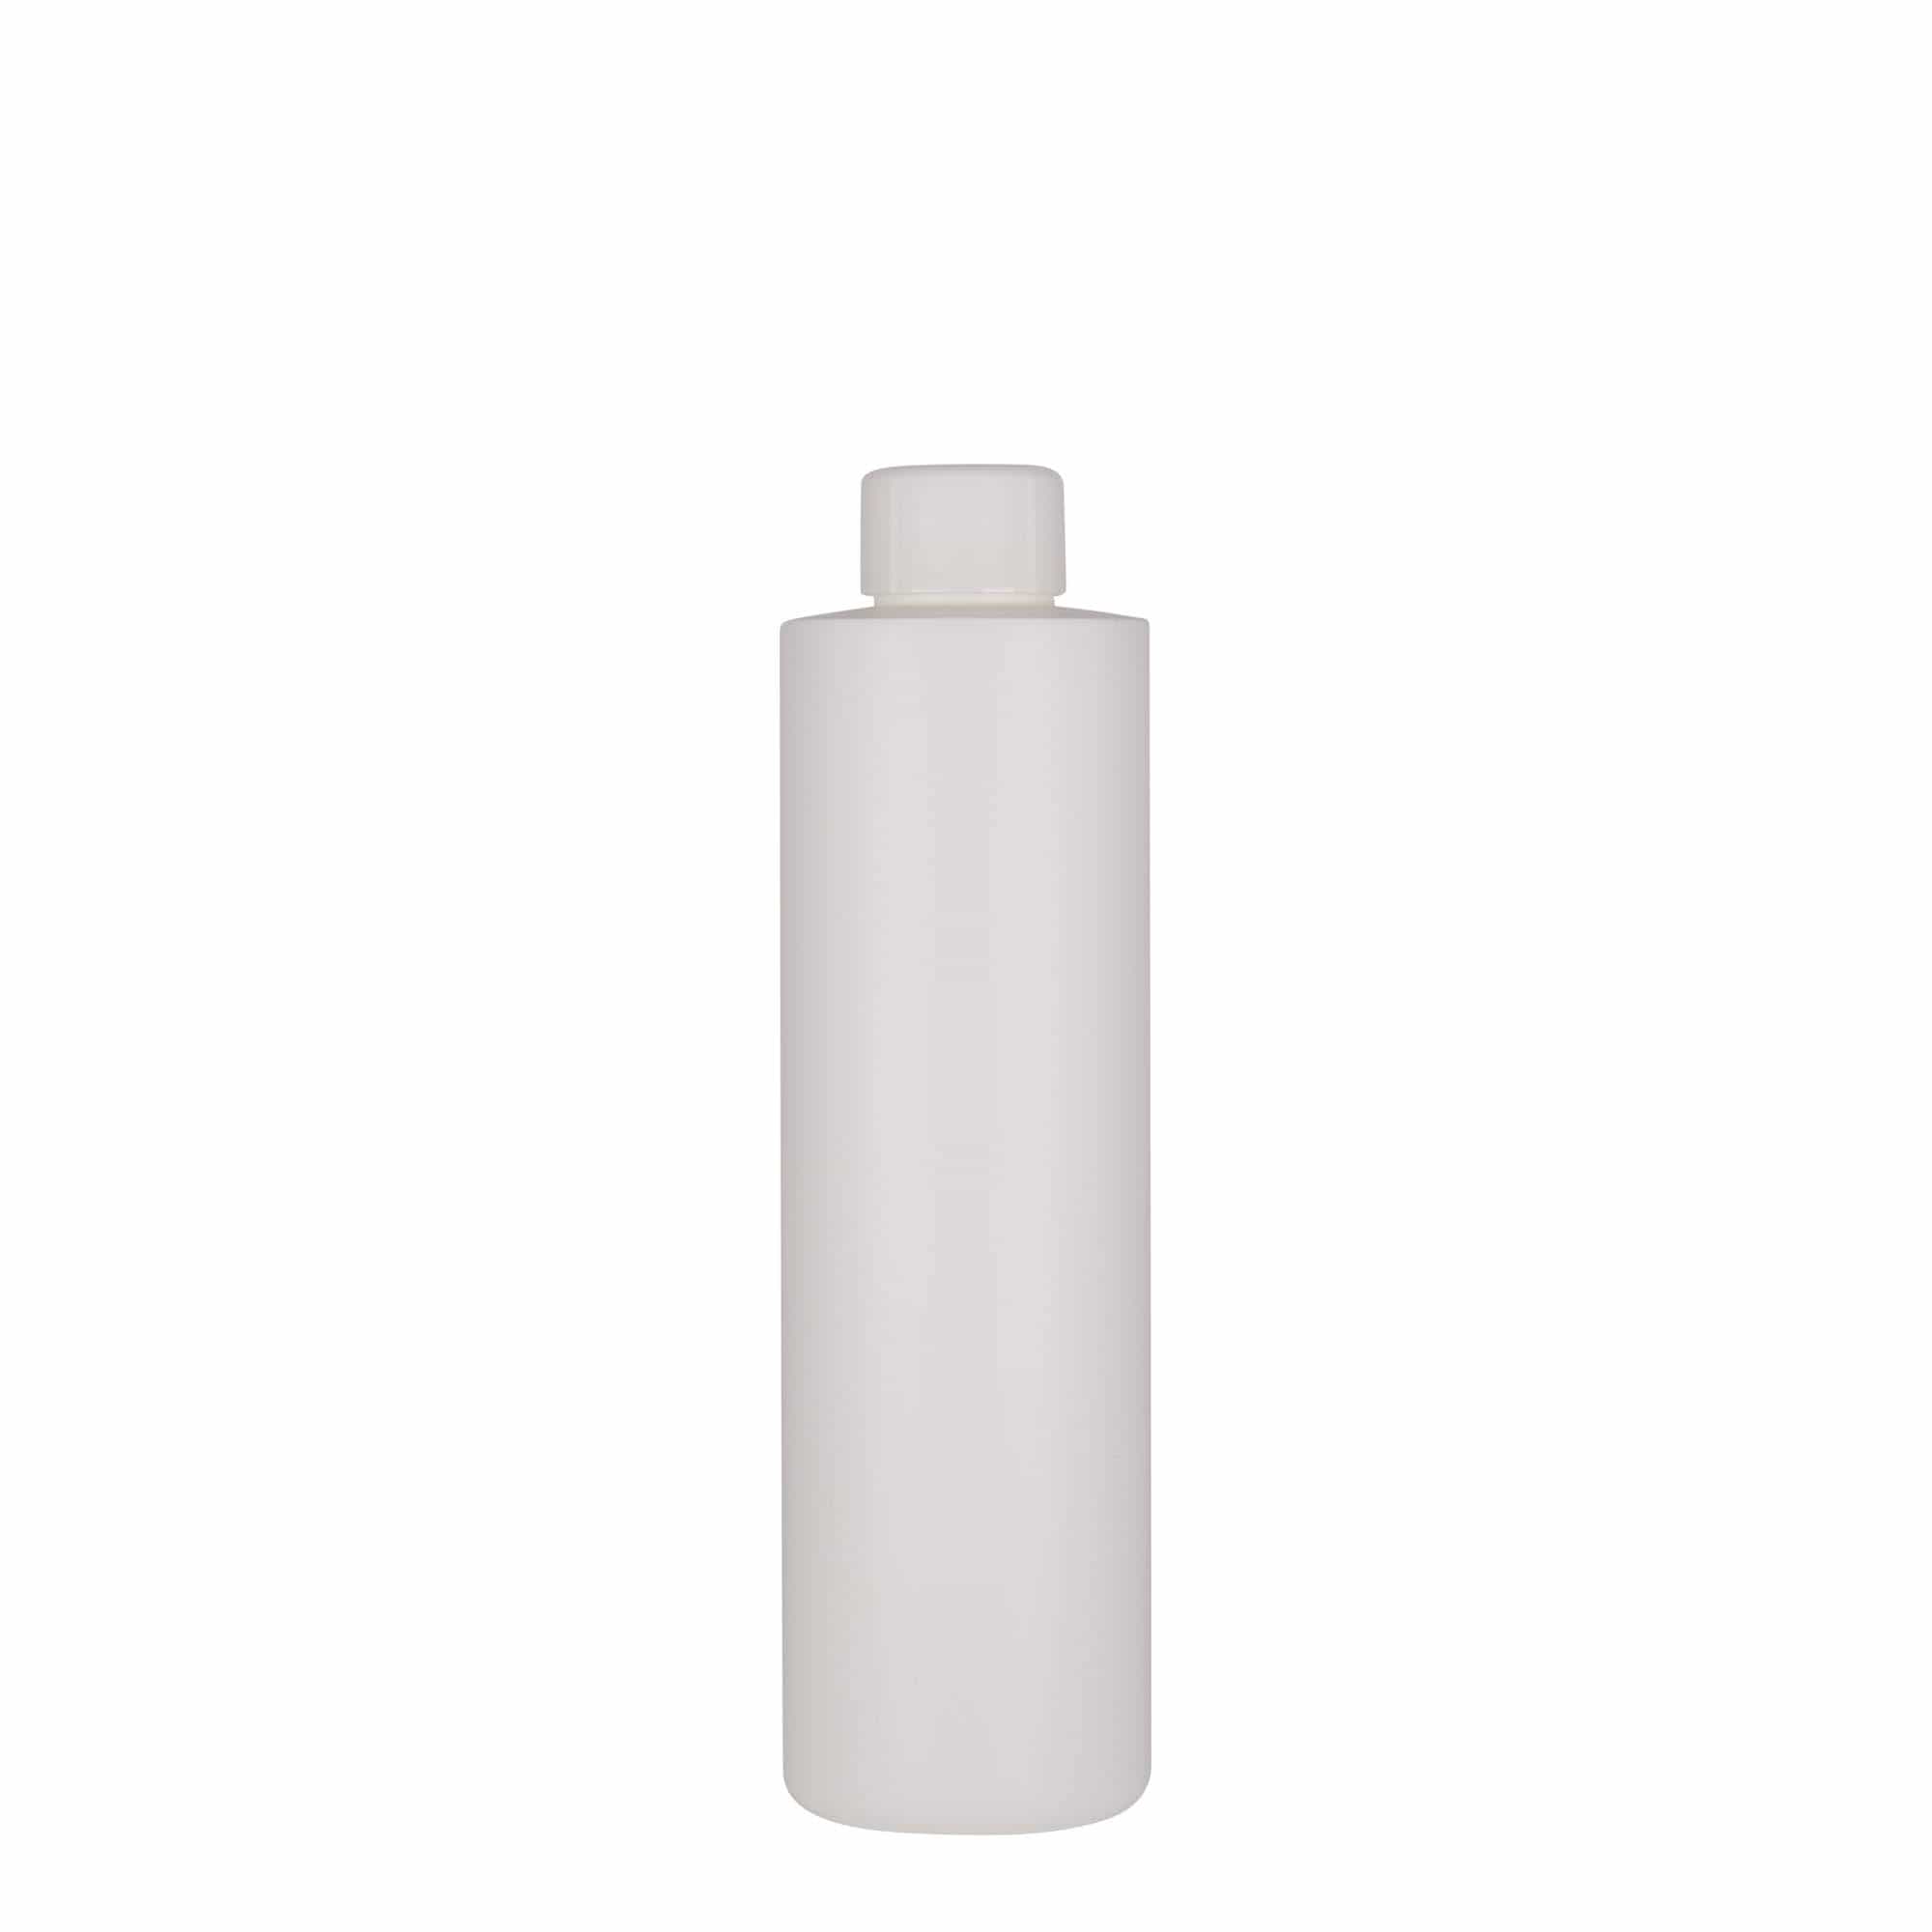 250 ml-es műanyag palack 'Pipe', HDPE, fehér, szájnyílás: GPI 24/410